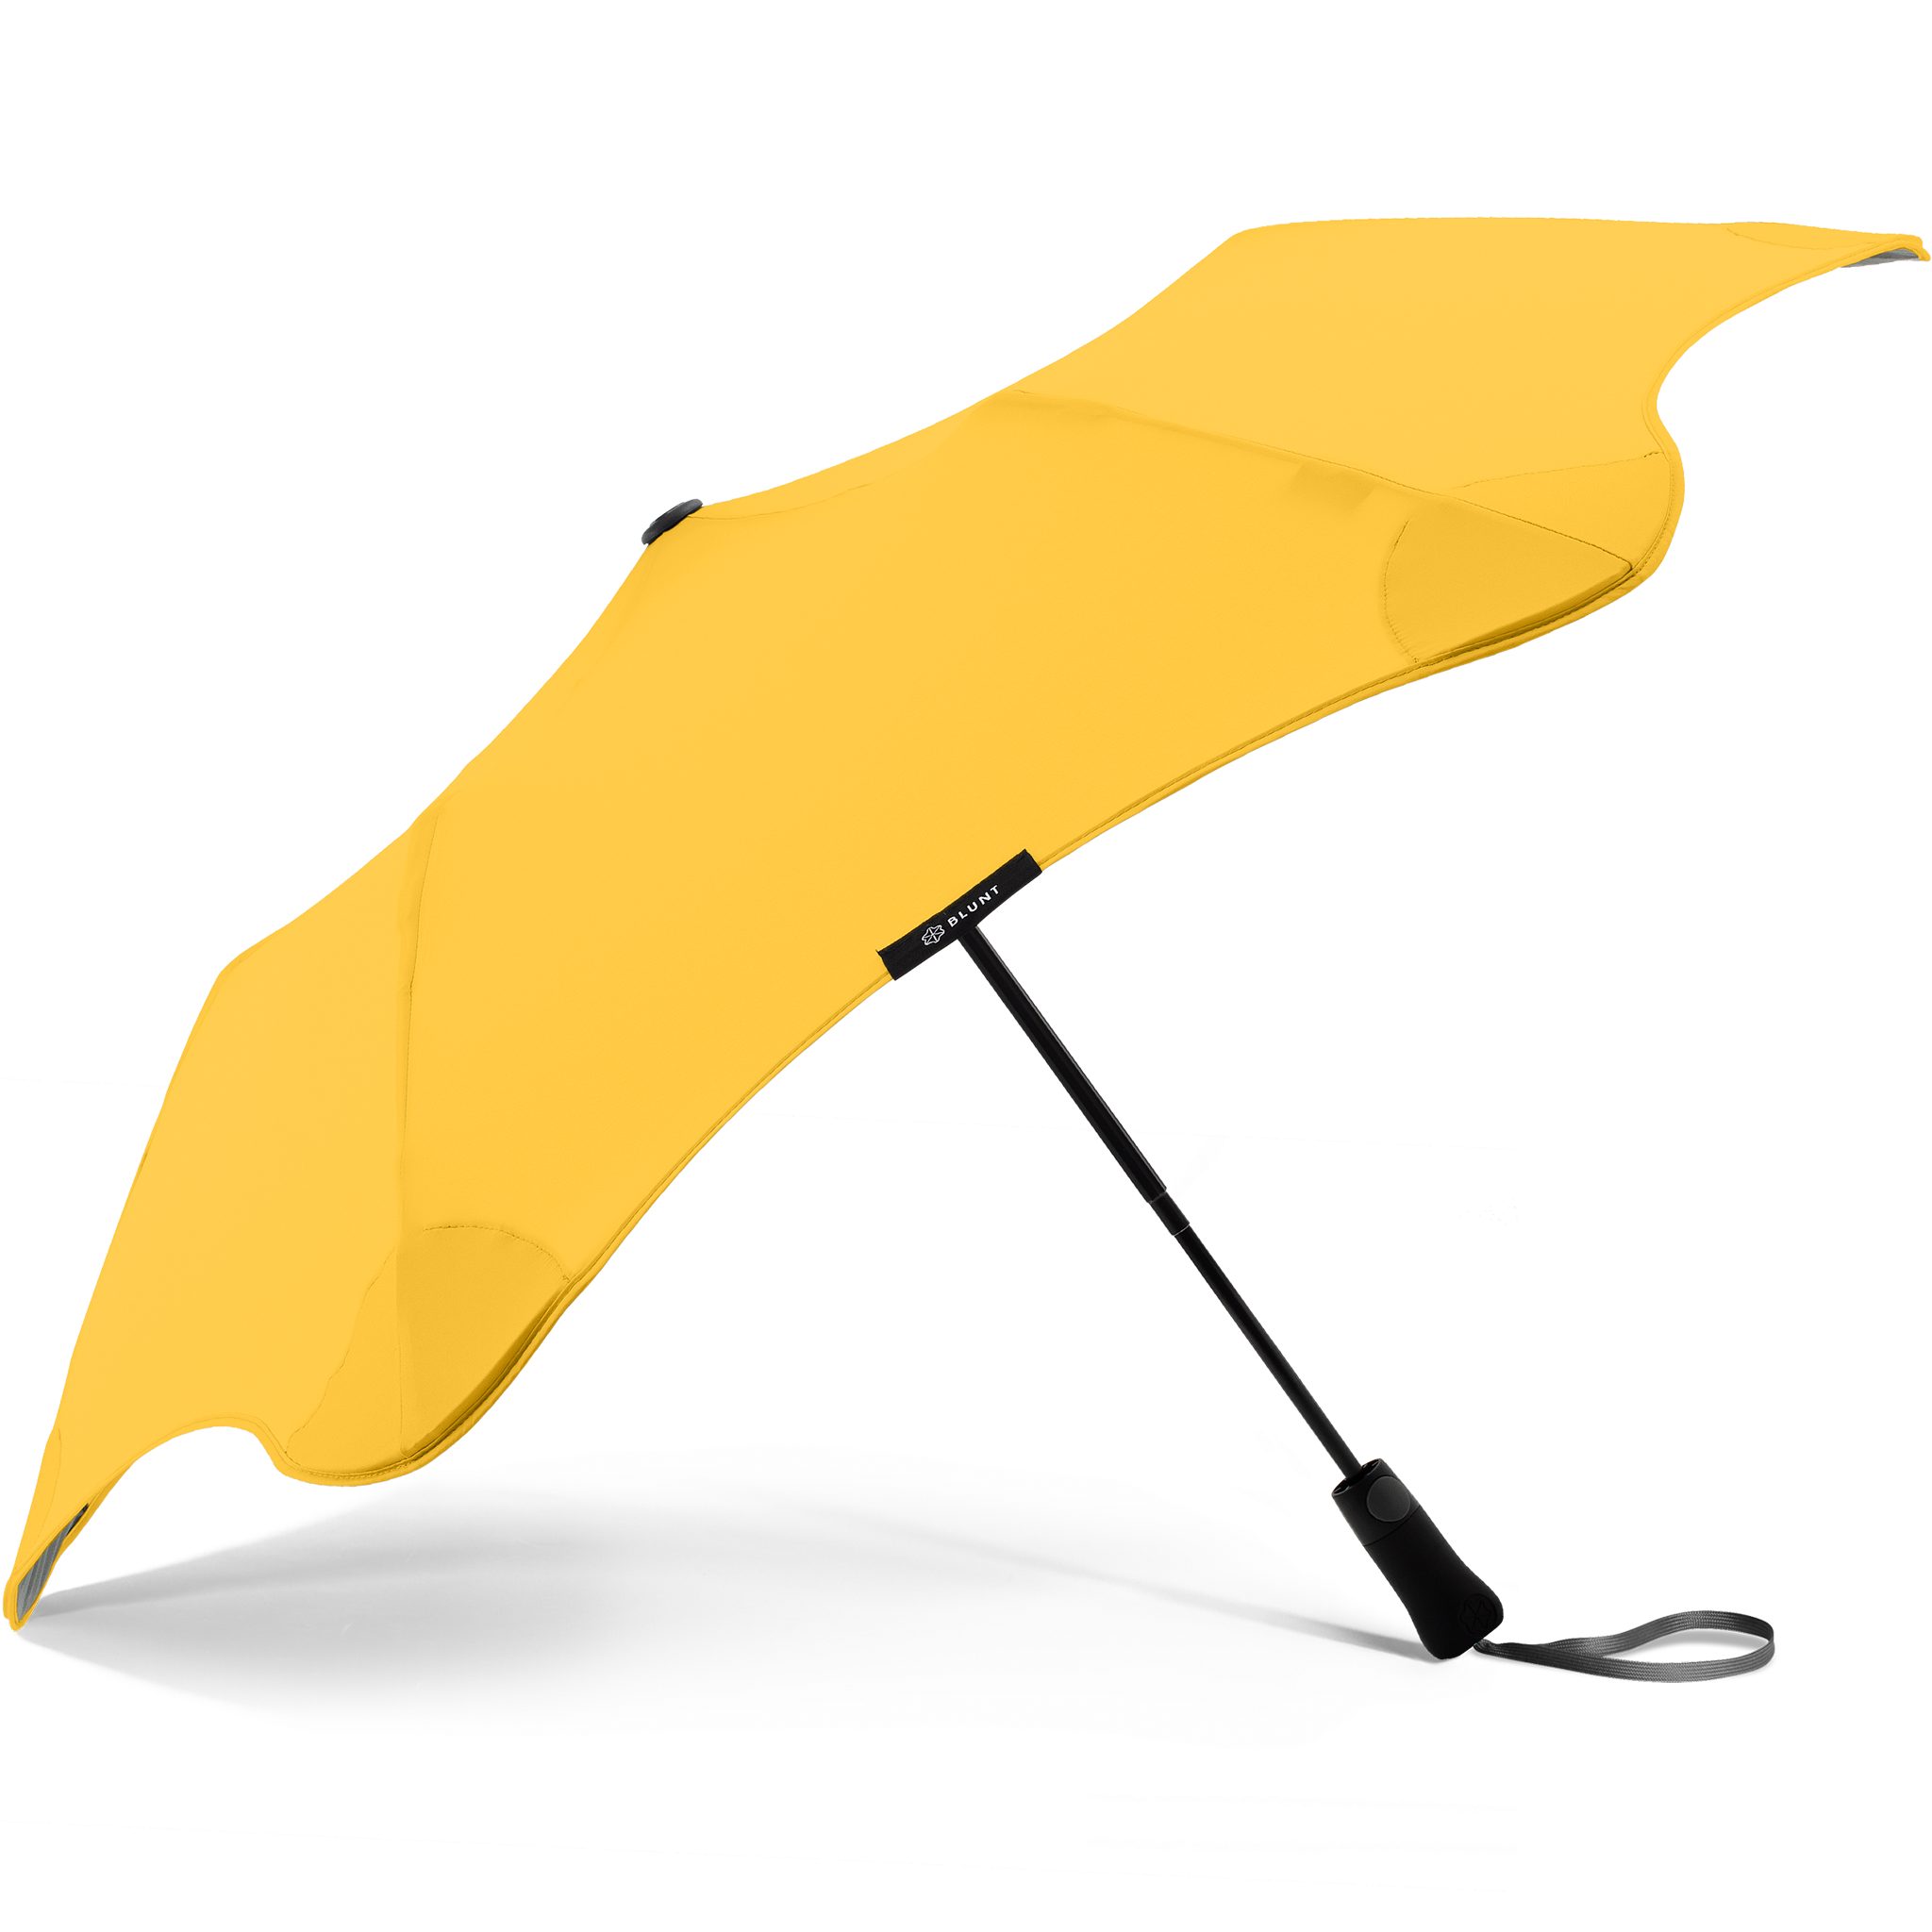 Metro, Technologie, Taschenregenschirm einzigartige patentierte herausragende Blunt gelb Silhouette